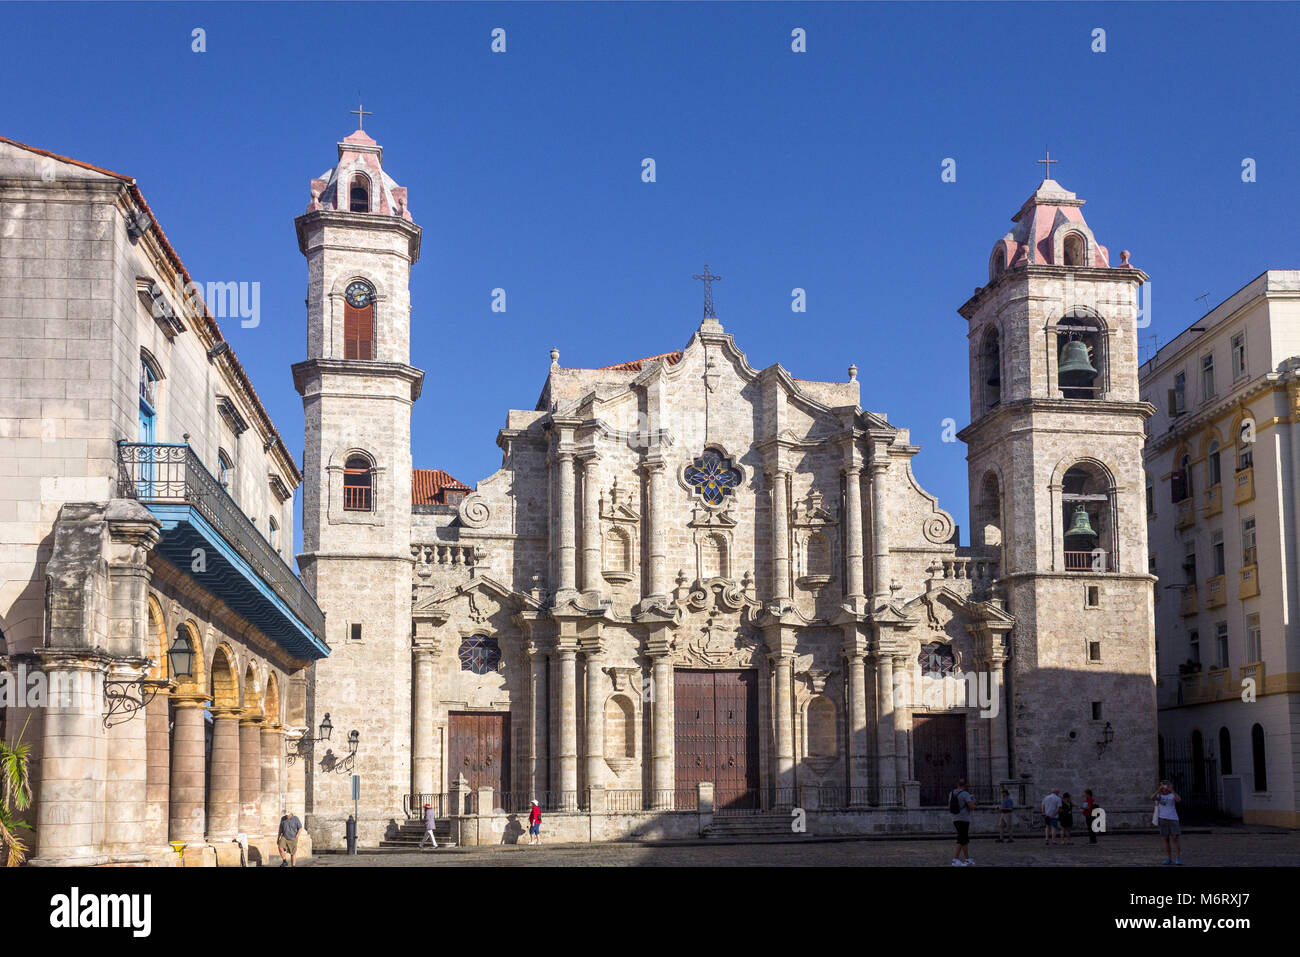 La Catedral de la Virgen María de la Concepción Inmaculada de La Habana - exterior Stock Photo